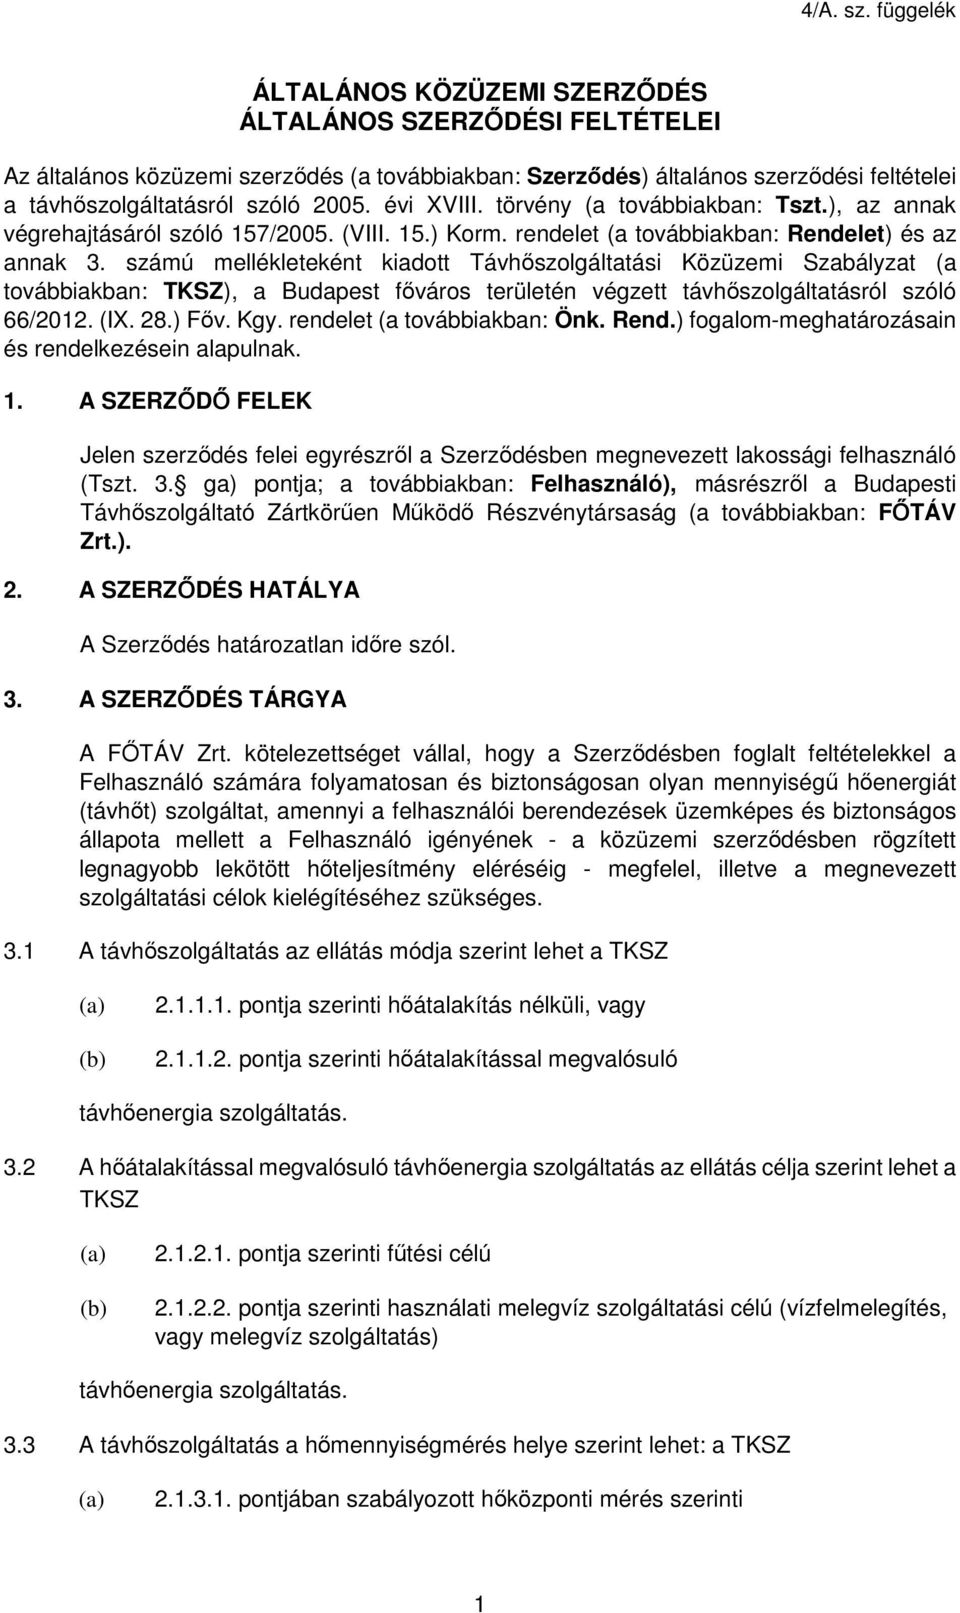 számú mellékleteként kiadott Távhőszolgáltatási Közüzemi Szabályzat (a továbbiakban: TKSZ), a Budapest főváros területén végzett távhőszolgáltatásról szóló 66/2012. (IX. 28.) Főv. Kgy.